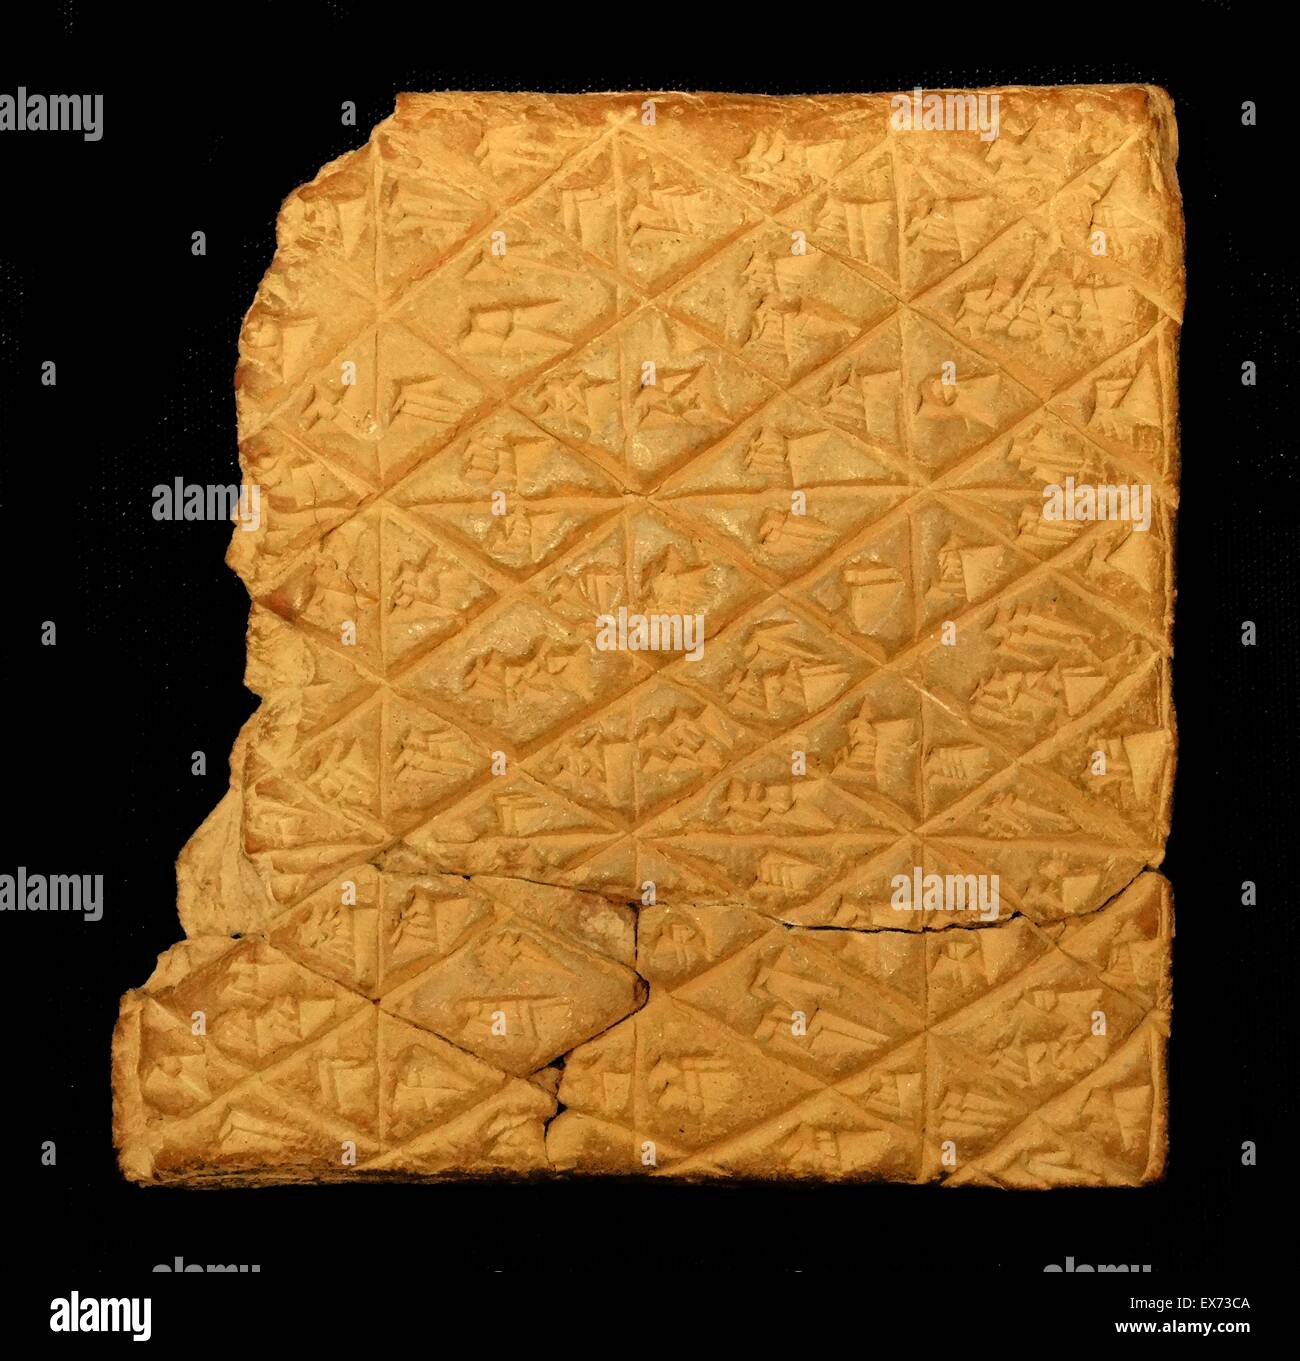 Le regole di Tablet una tavoletta cuneiforme contenente il più antico del mondo note regole per un gioco di bordo, scritto da un astronomo babilonese nel 177 A.C. Il gioco originale si era evoluto e ora è stato riprodotto per scommesse con cinque diversi pezzi per giocatore. La parte anteriore del Foto Stock